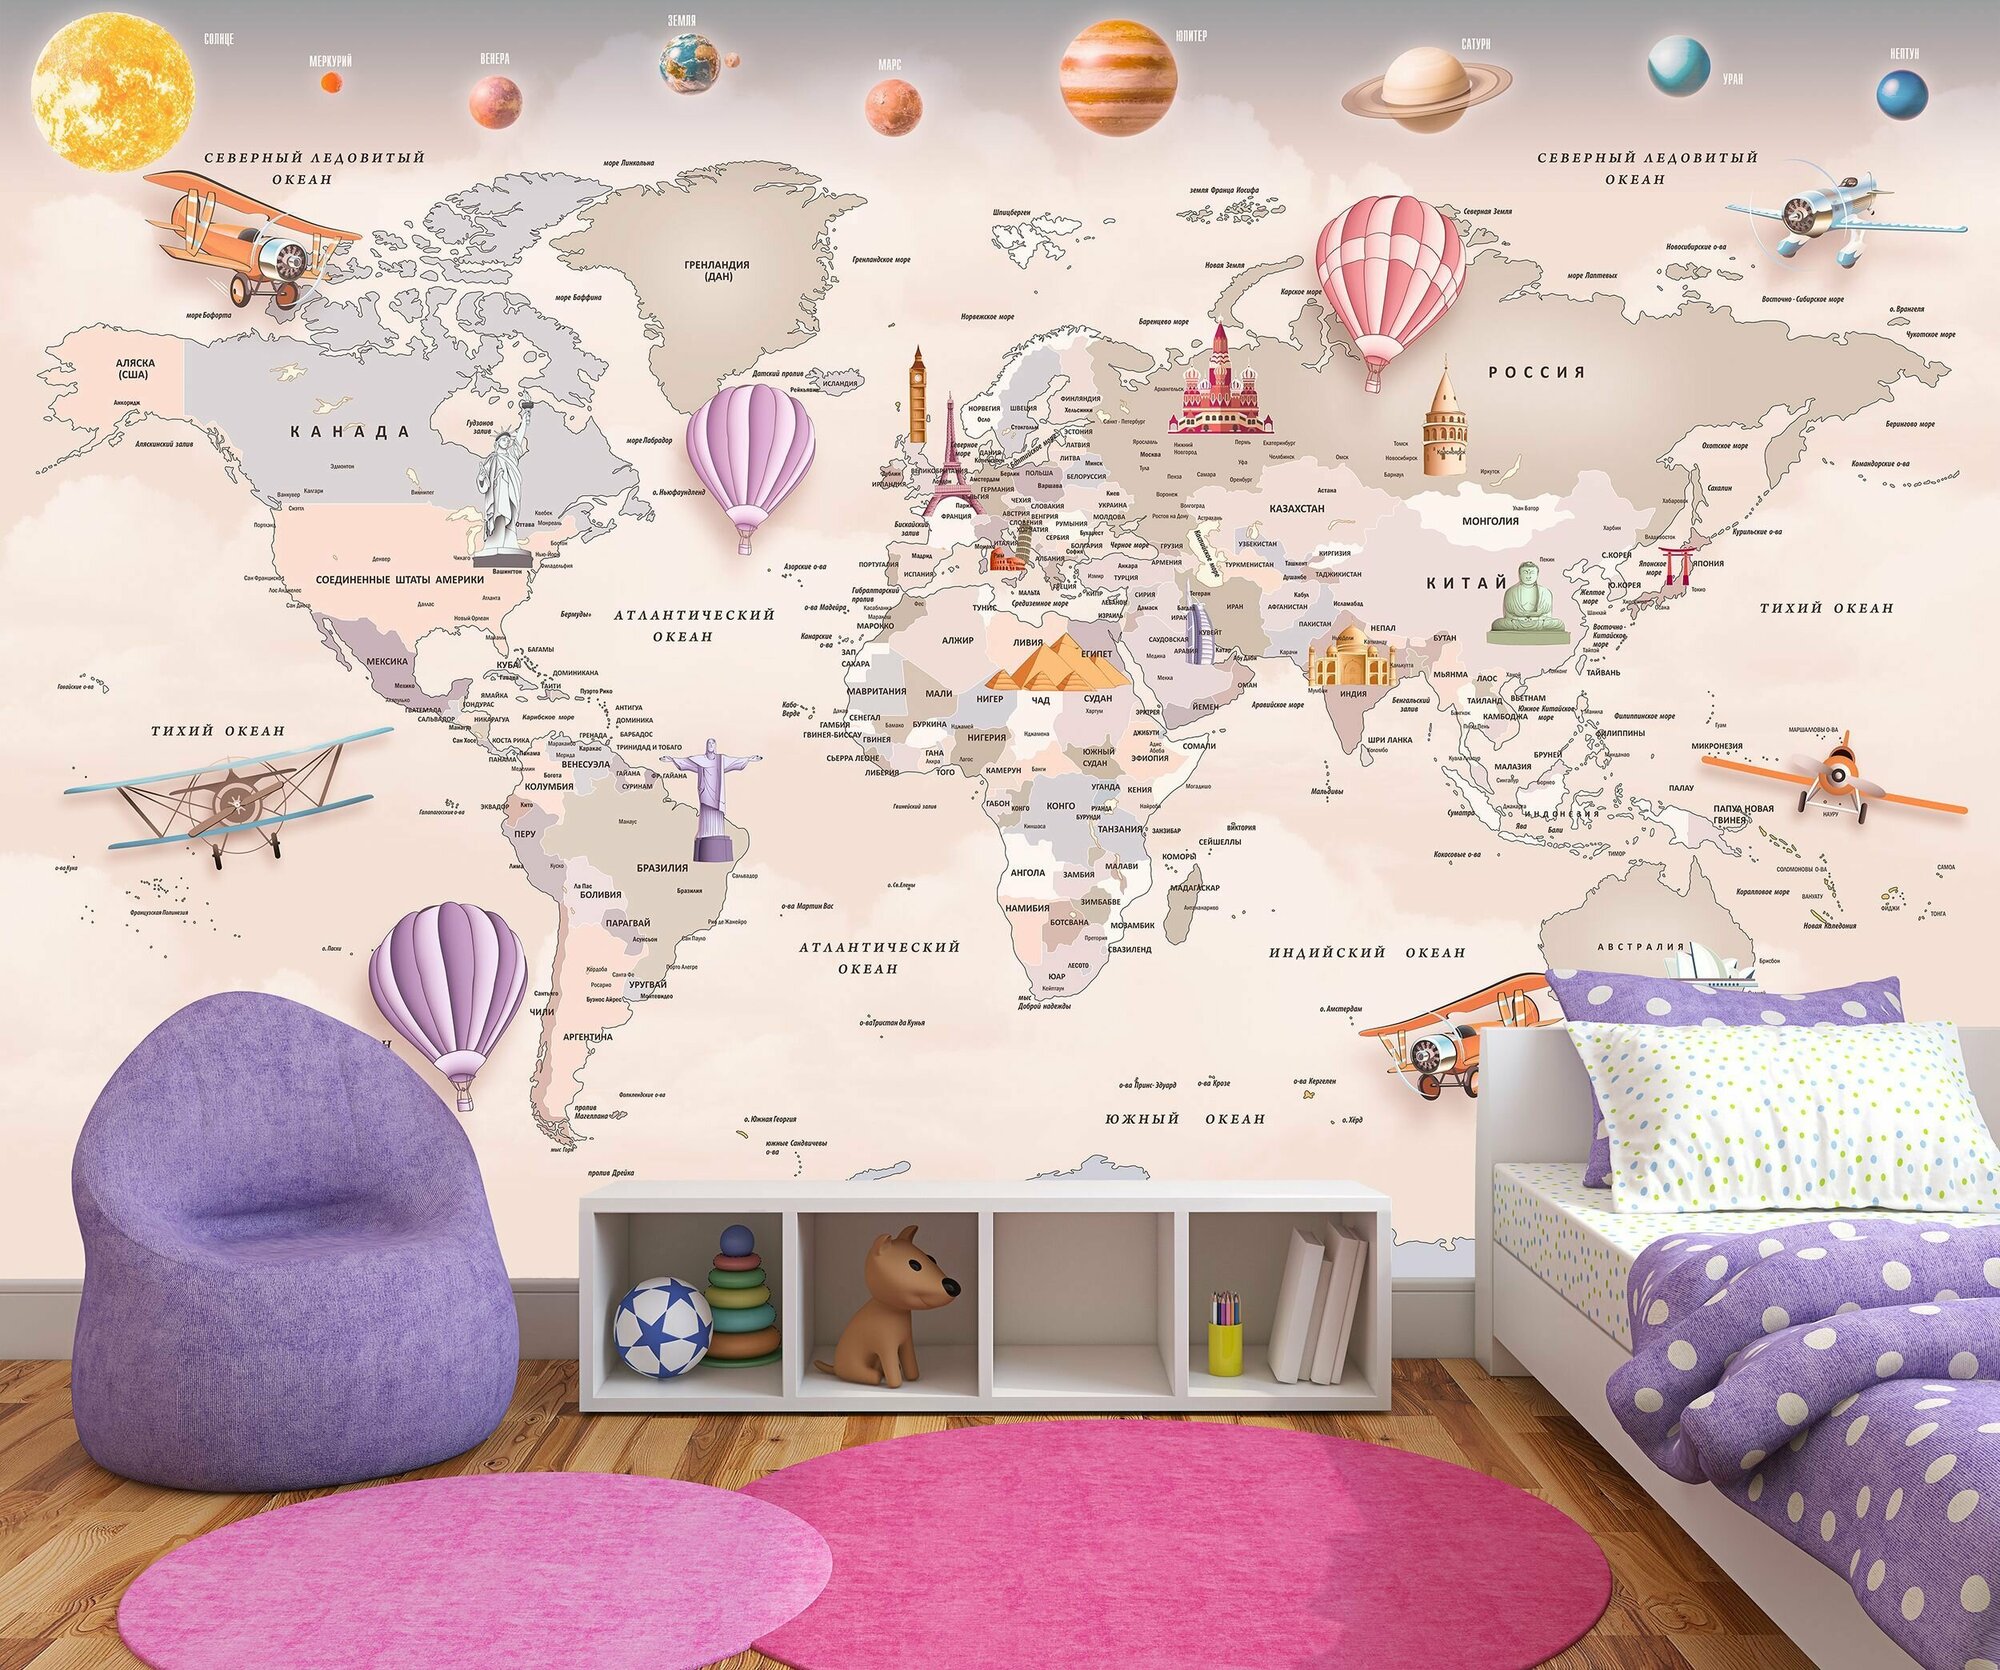 Фотообои флизелиновые 150х100см. на стену. Серия MAPS ARTDELUXE. 3д детская карта мира и планеты. Обои дизайнерские, эксклюзивные для детской комнаты.